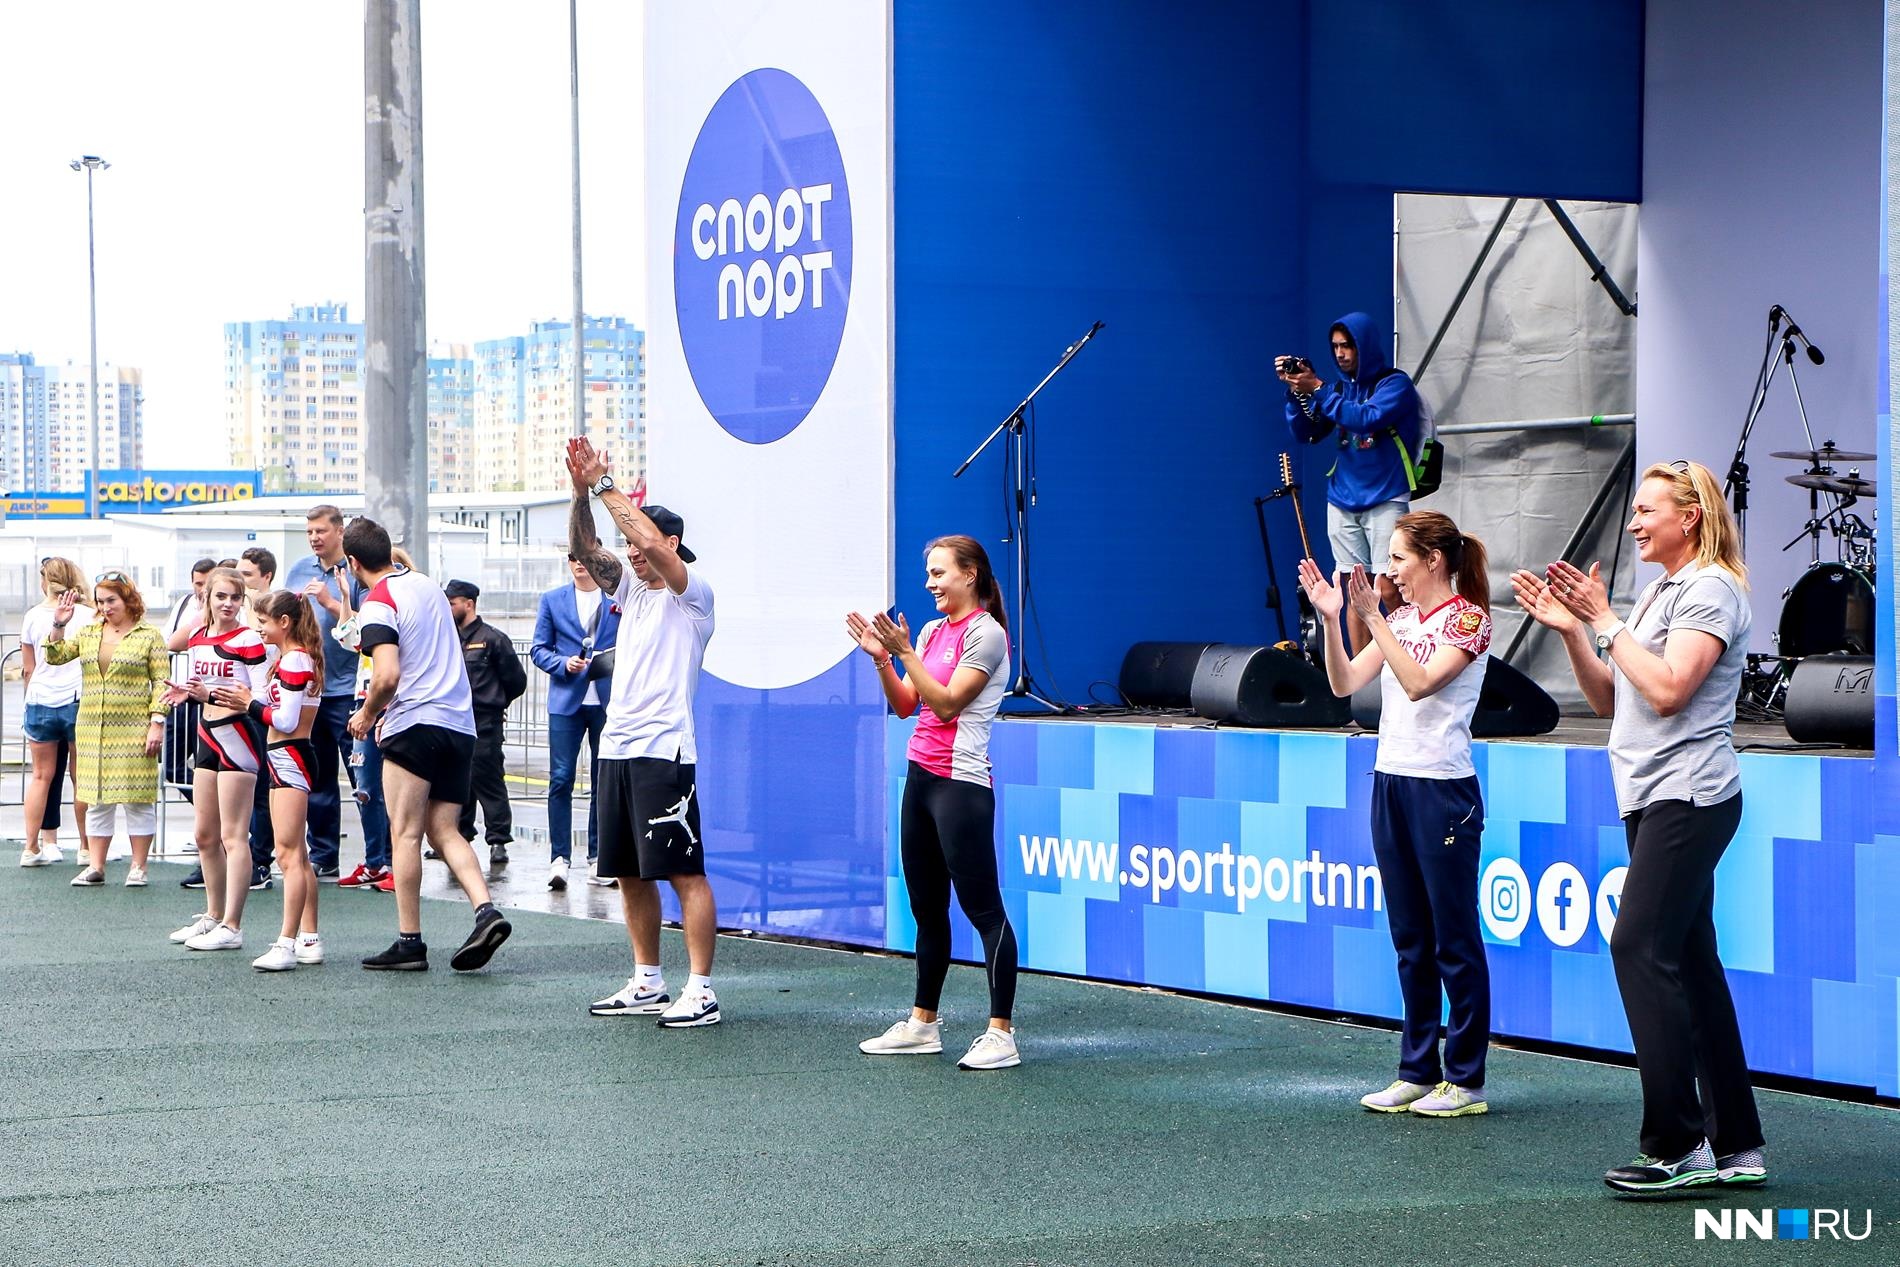 Нижегородские олимпийцы зажигали под веселую музыку